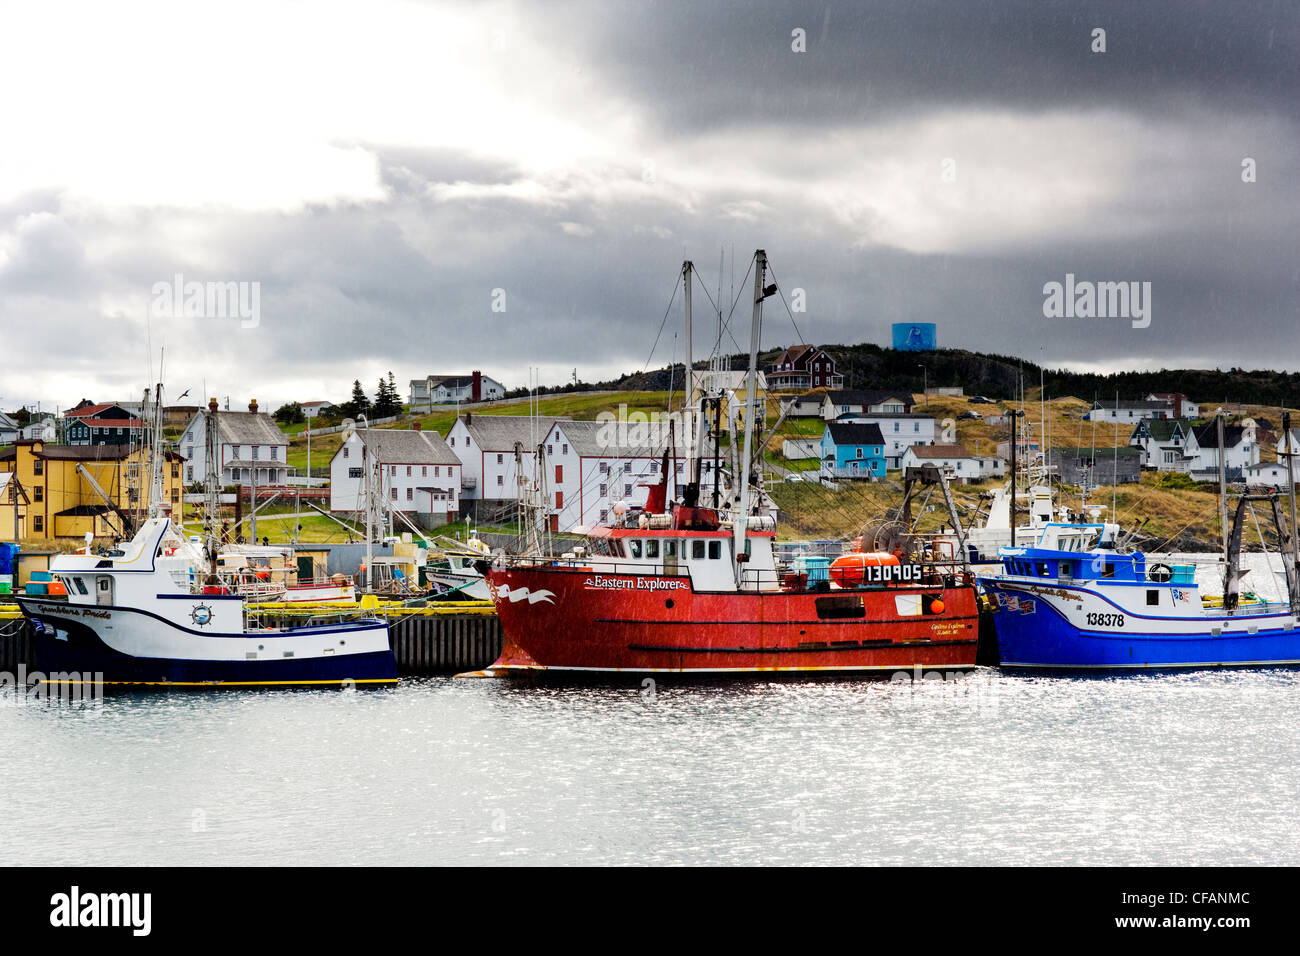 Fishing boats tied up to wharf in the rain, Bonavista, Newfoundland and Labrador, Canada. Stock Photo